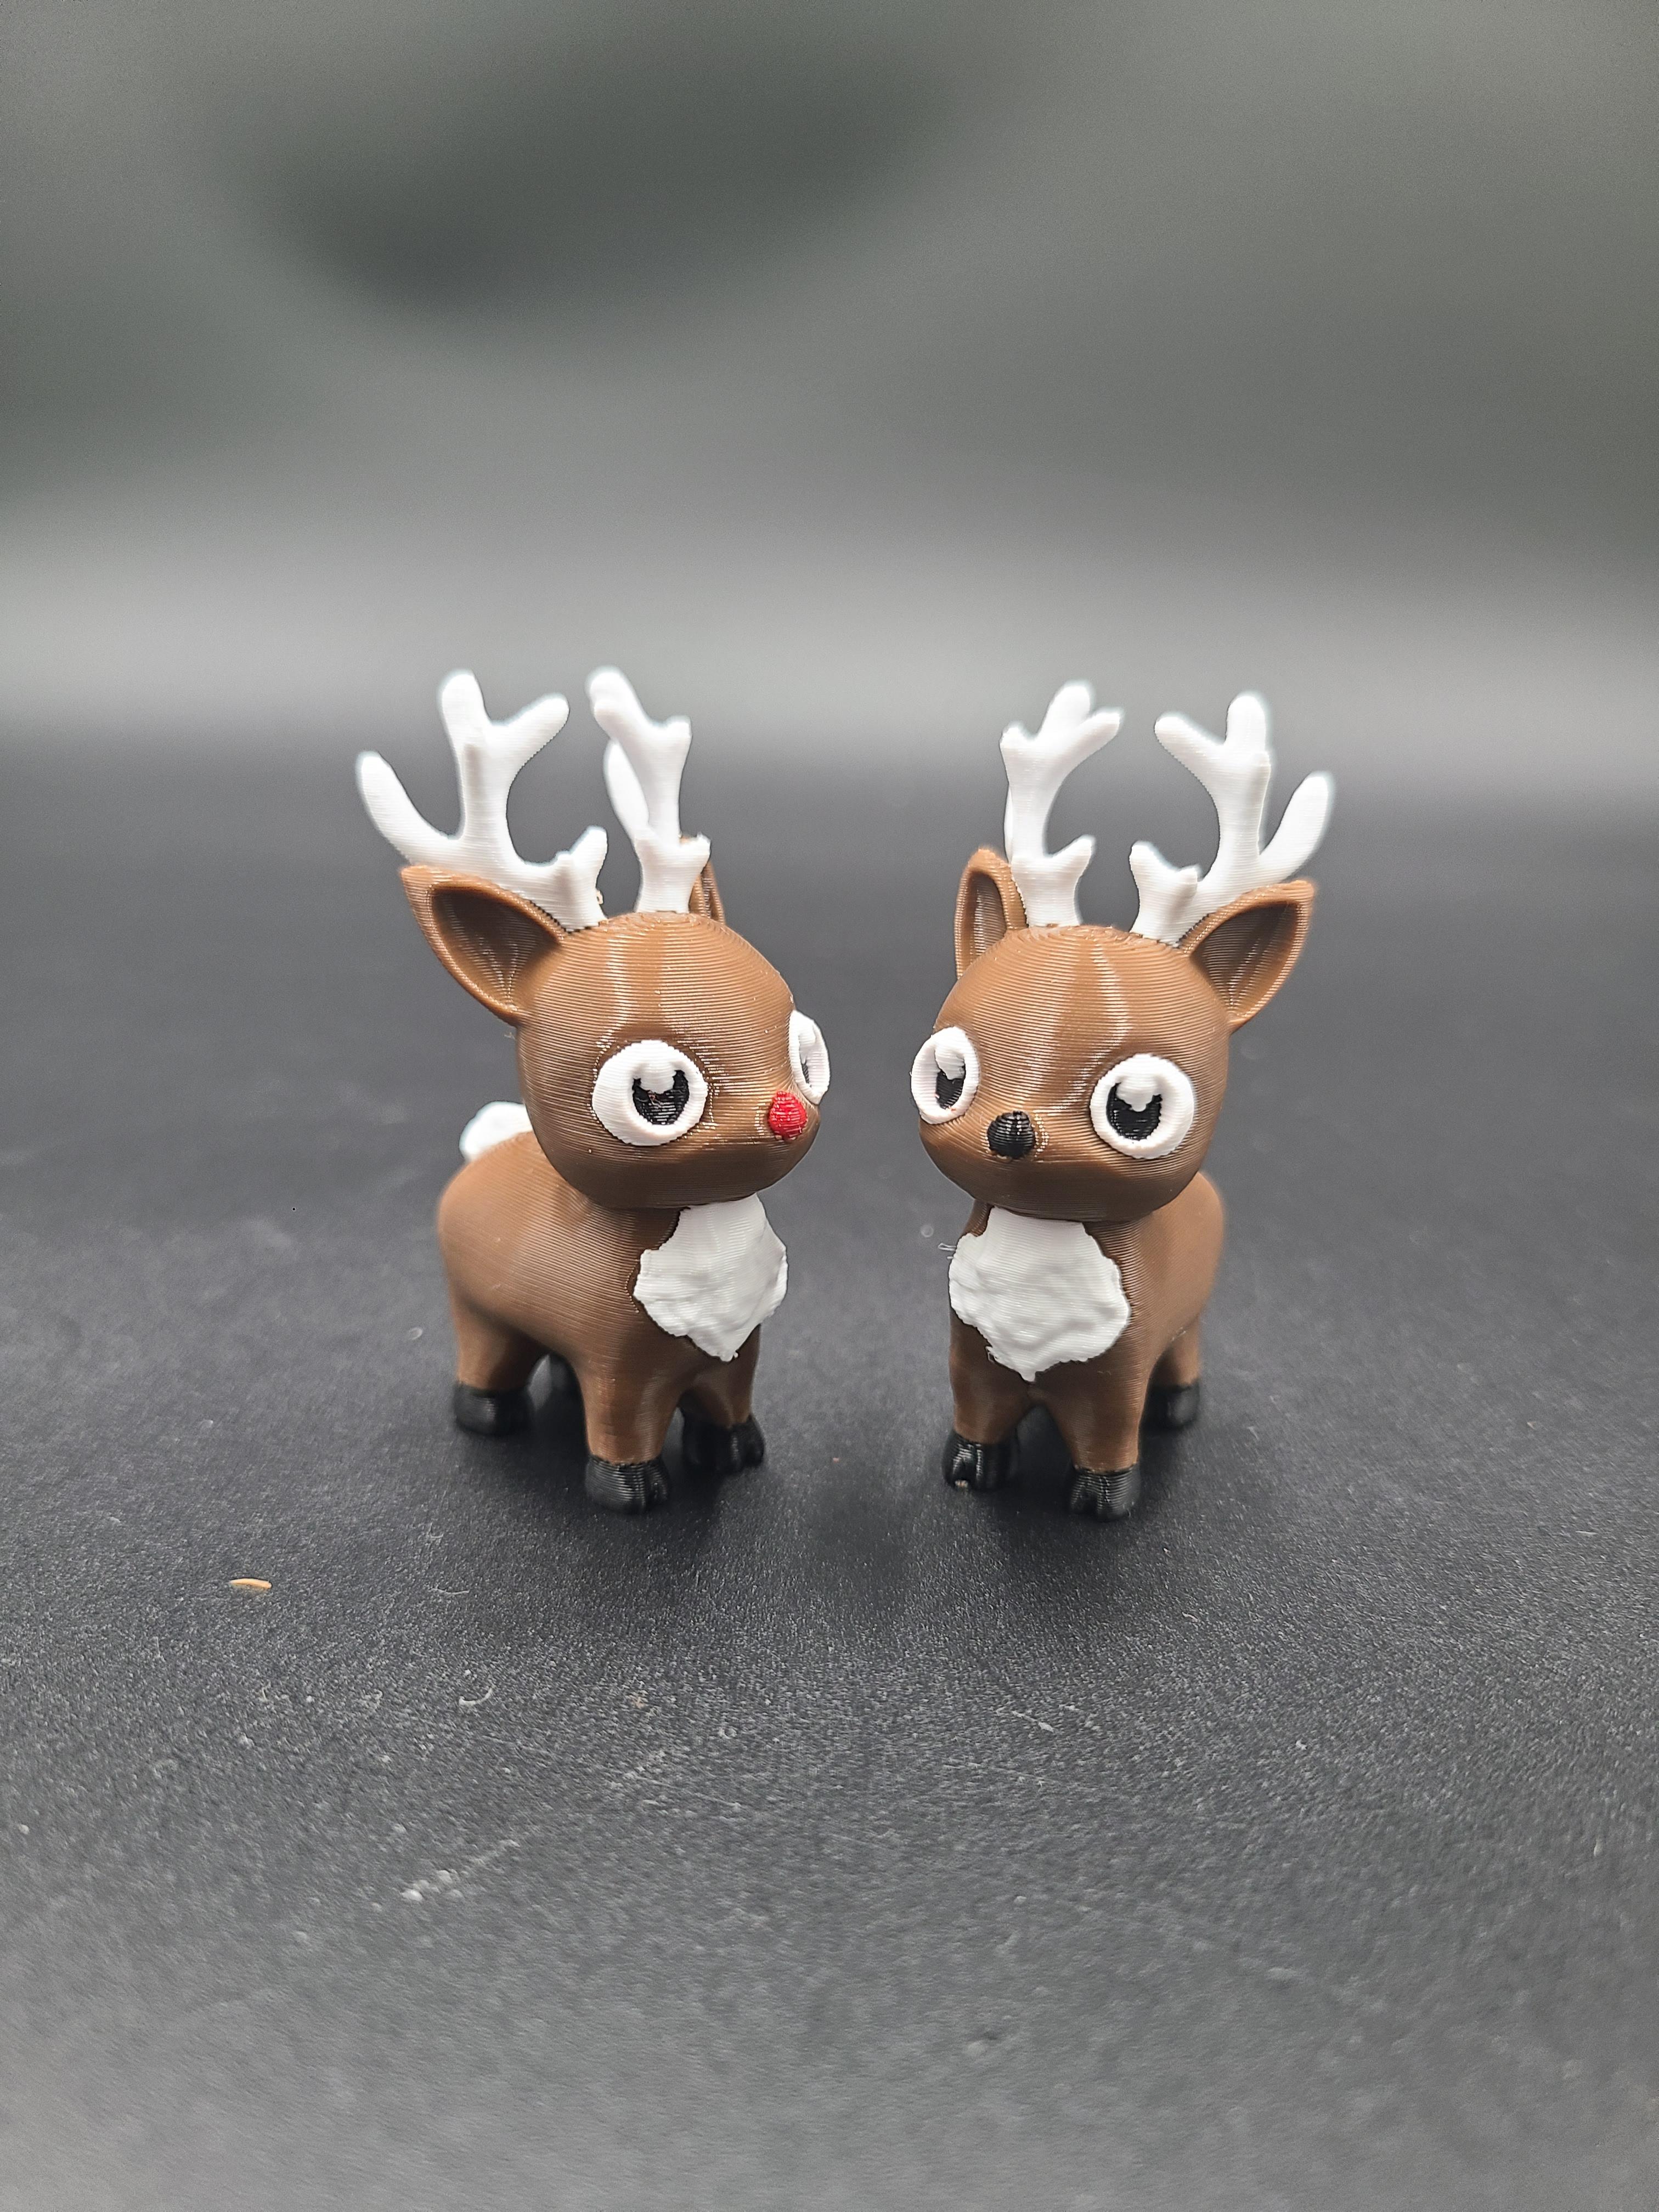 Happy Lil Reindeer - Multicolor 3MF for Bambu 3d model